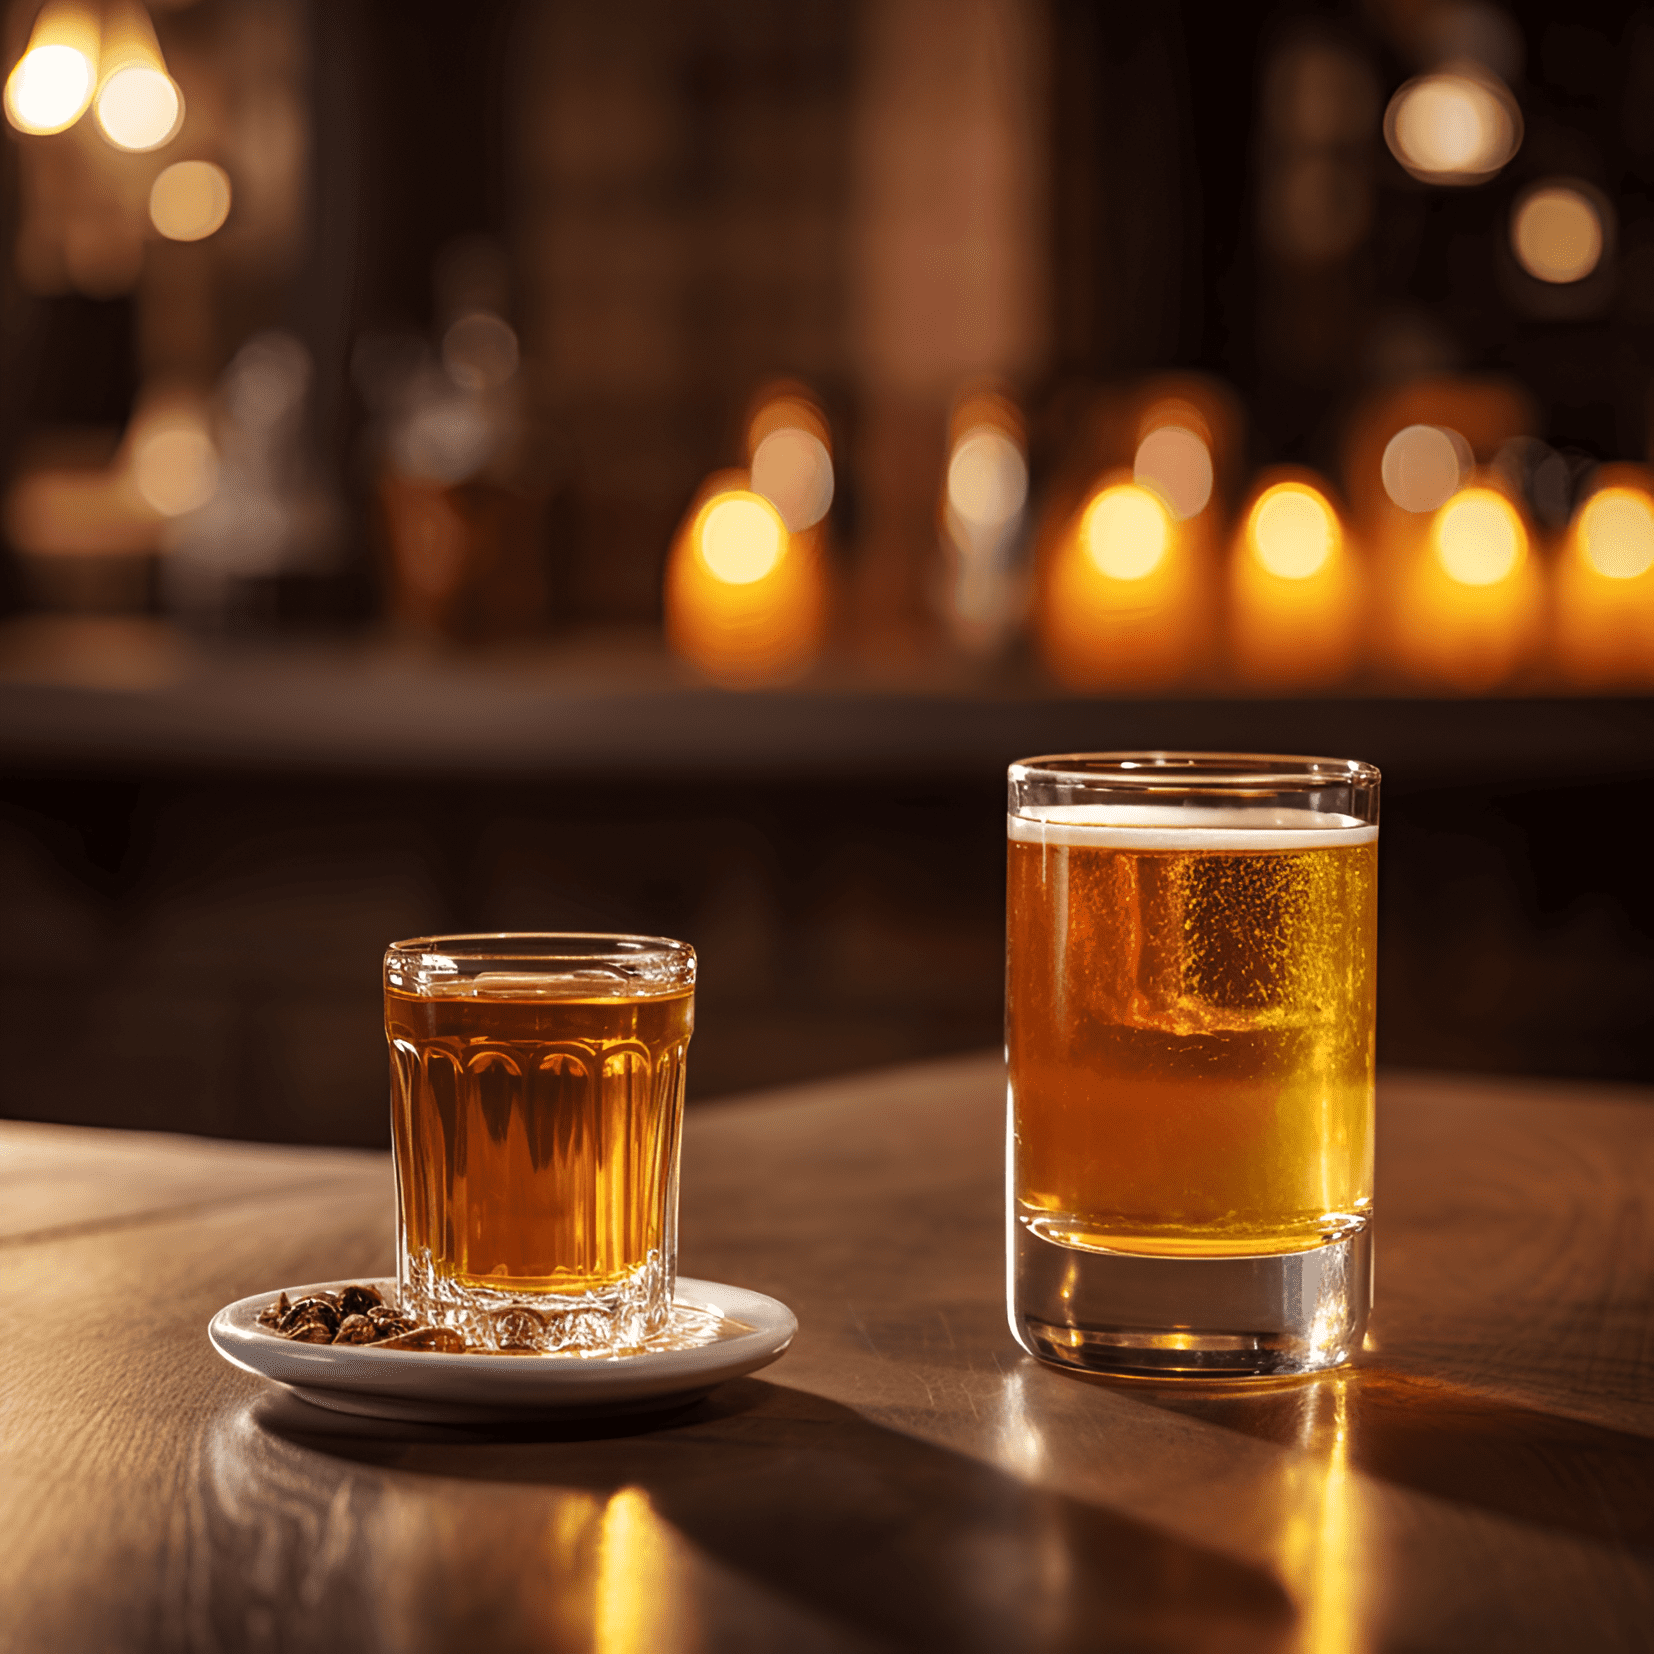 Boilermaker Cóctel Receta - El Boilermaker es un cóctel fuerte, robusto y ligeramente amargo. La combinación de whisky y cerveza crea un sabor audaz y reconfortante, con el whisky proporcionando un sabor suave y rico y la cerveza agregando una nota refrescante y ligeramente amarga.